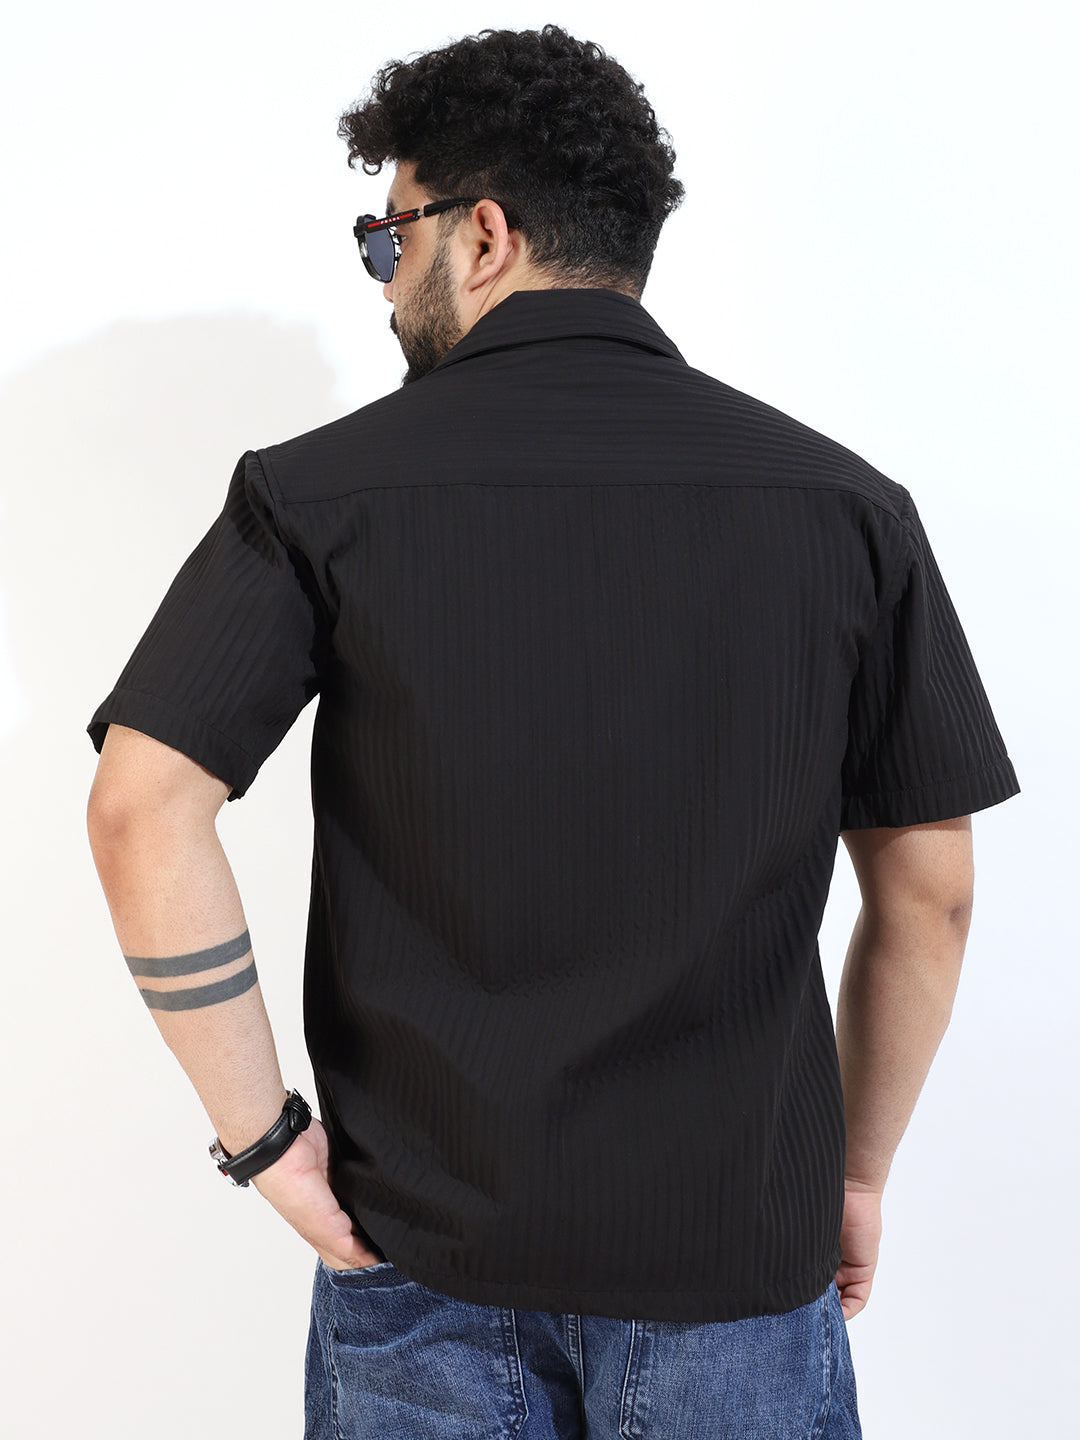 Serene Knit Elegance Black Half Sleeve Shirt